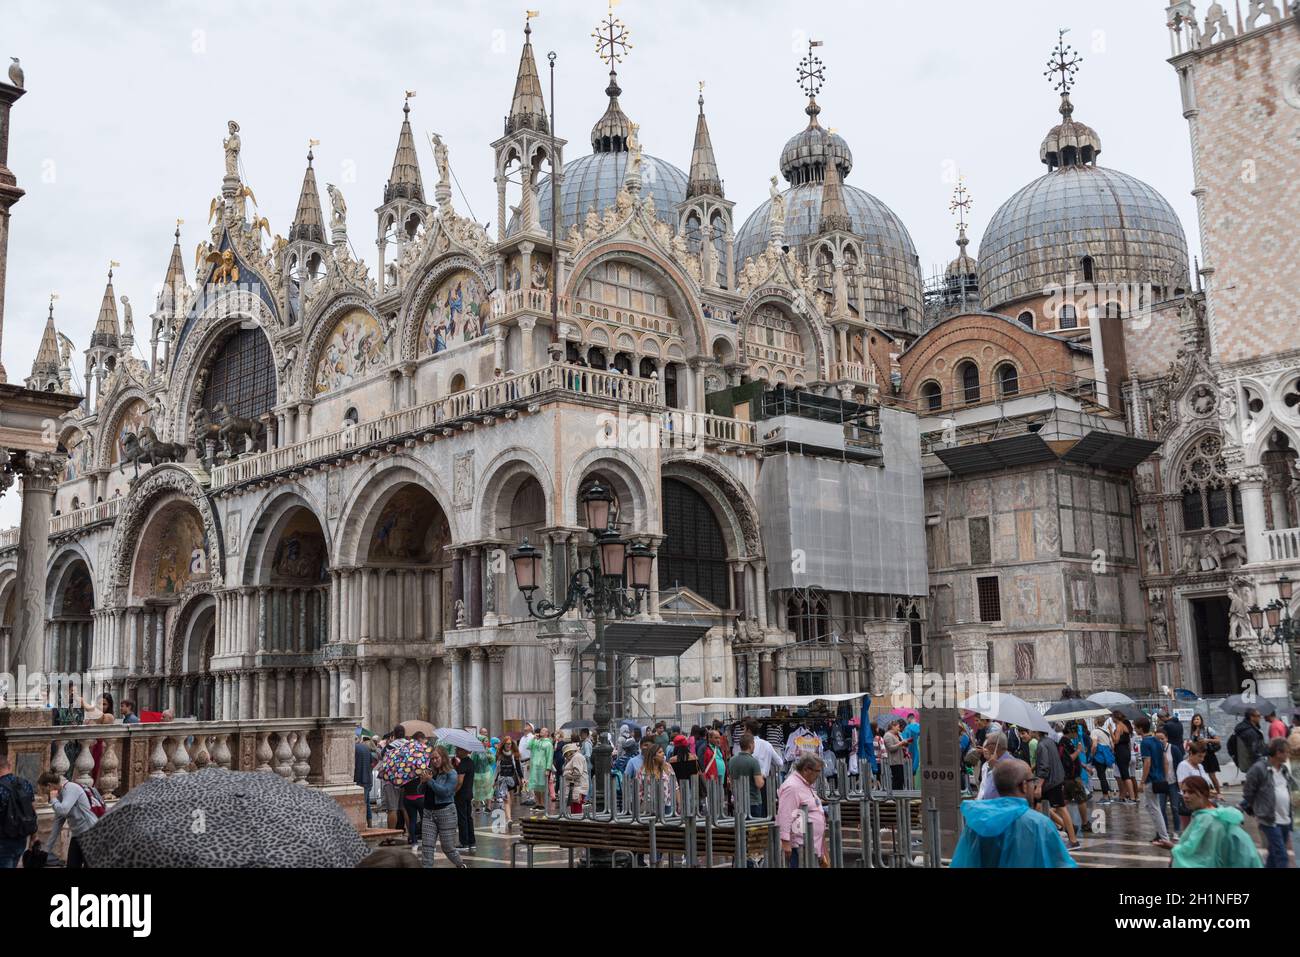 Vale la pena ver la Basílica de San Marcos en estilo gótico en la Plaza de San Marcos en Venecia - Italia Foto de stock